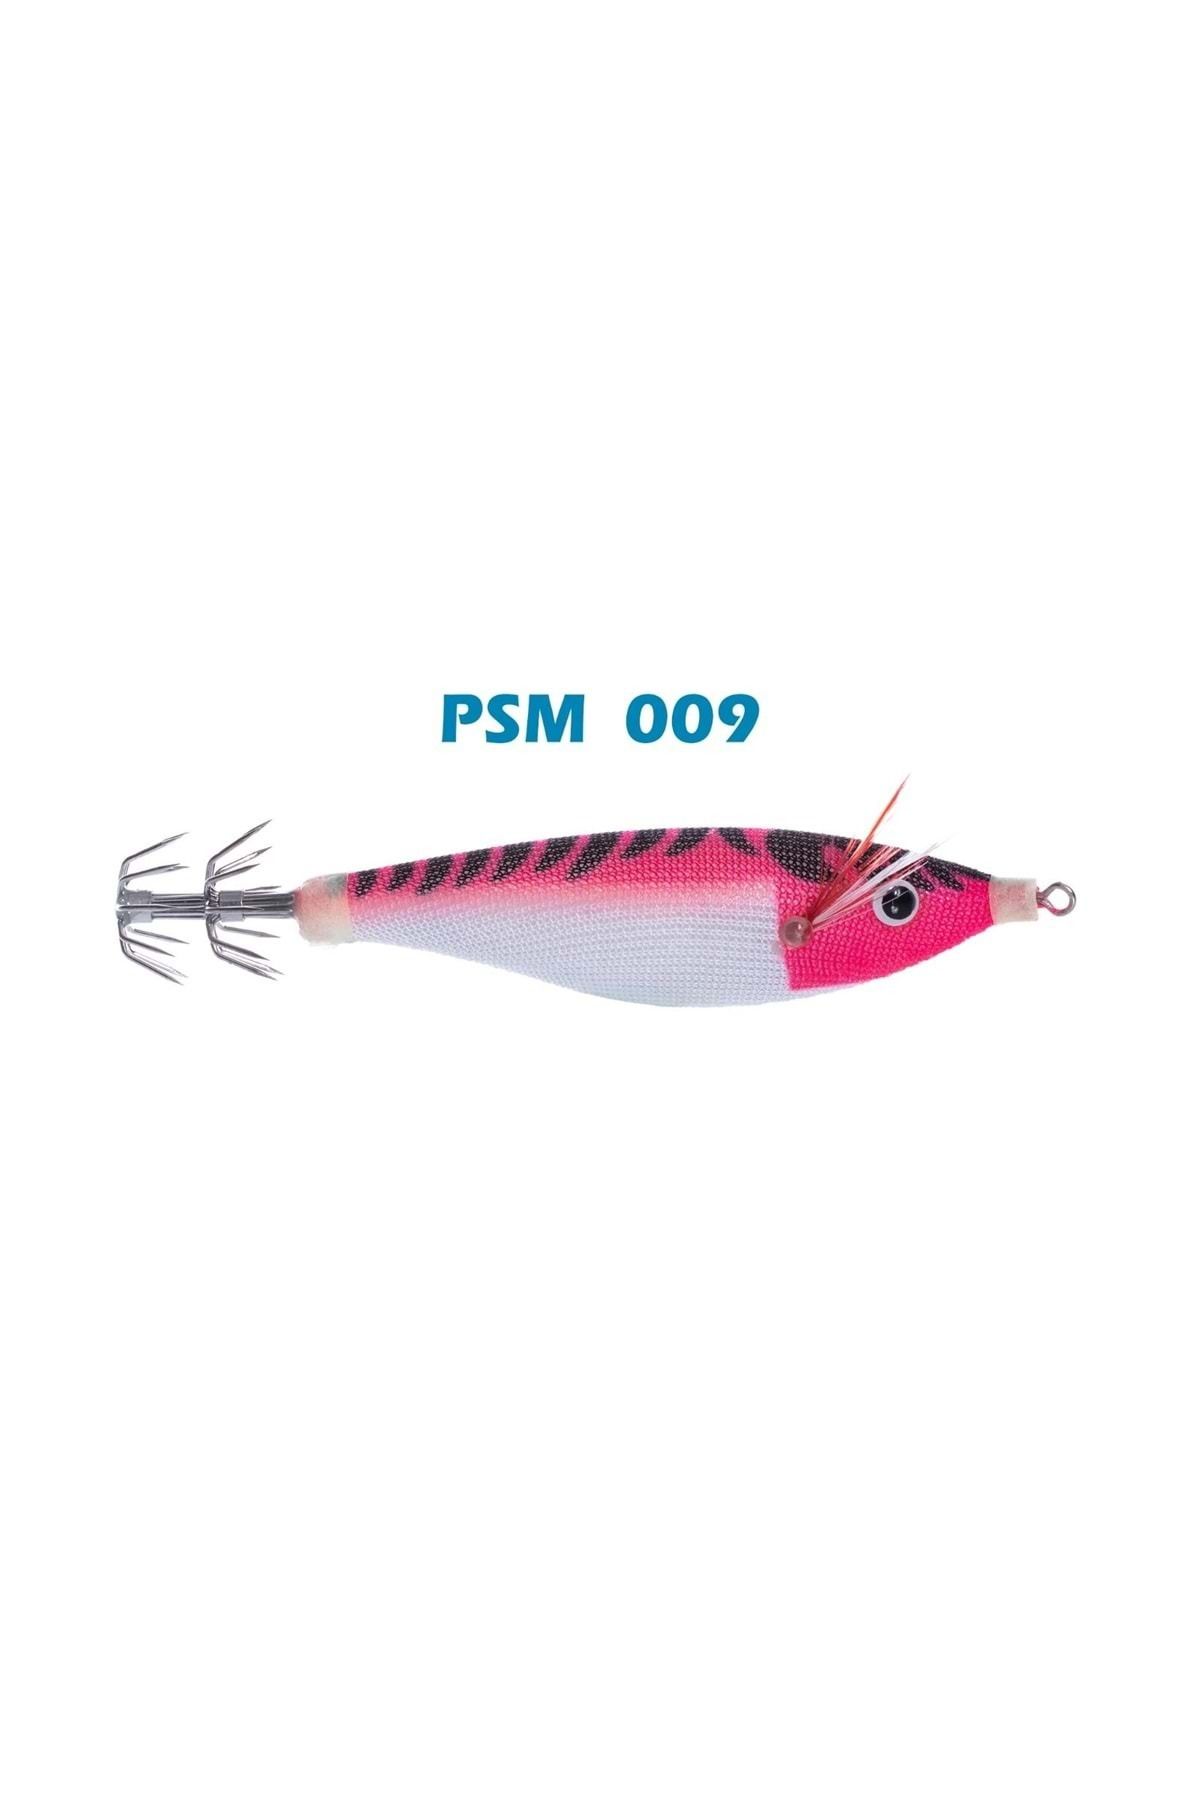 Pandora Squid Master Psm 7 Cm 4 gr Psm 009 Kalamar Zokası